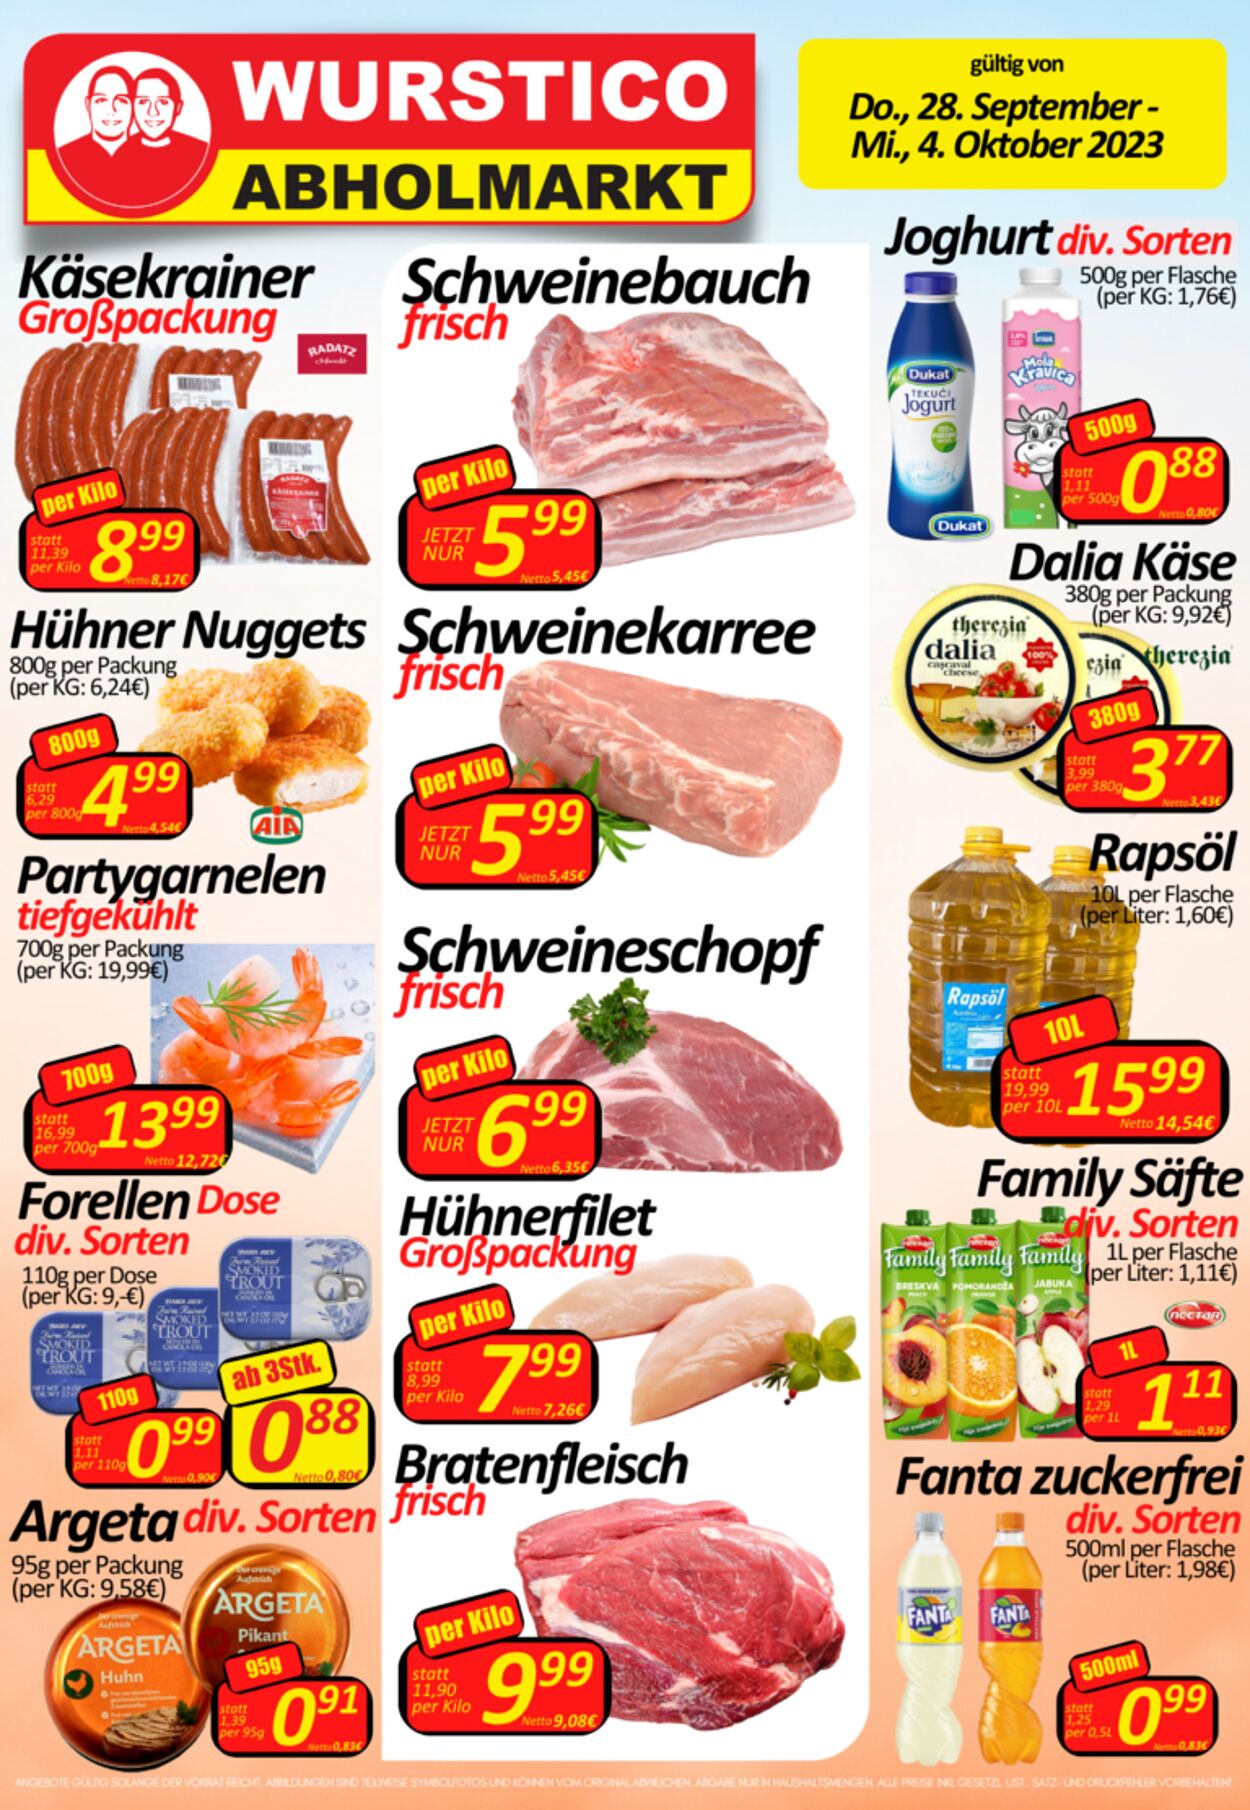 Prospekt Wurstico - Wurstico Abholmarkt – Wurst, Fleischwaren und mehr zu FabrikspreisenAktuelle Angebote bei Wurstico 28 Sep, 2023 - 4 Okt, 2023